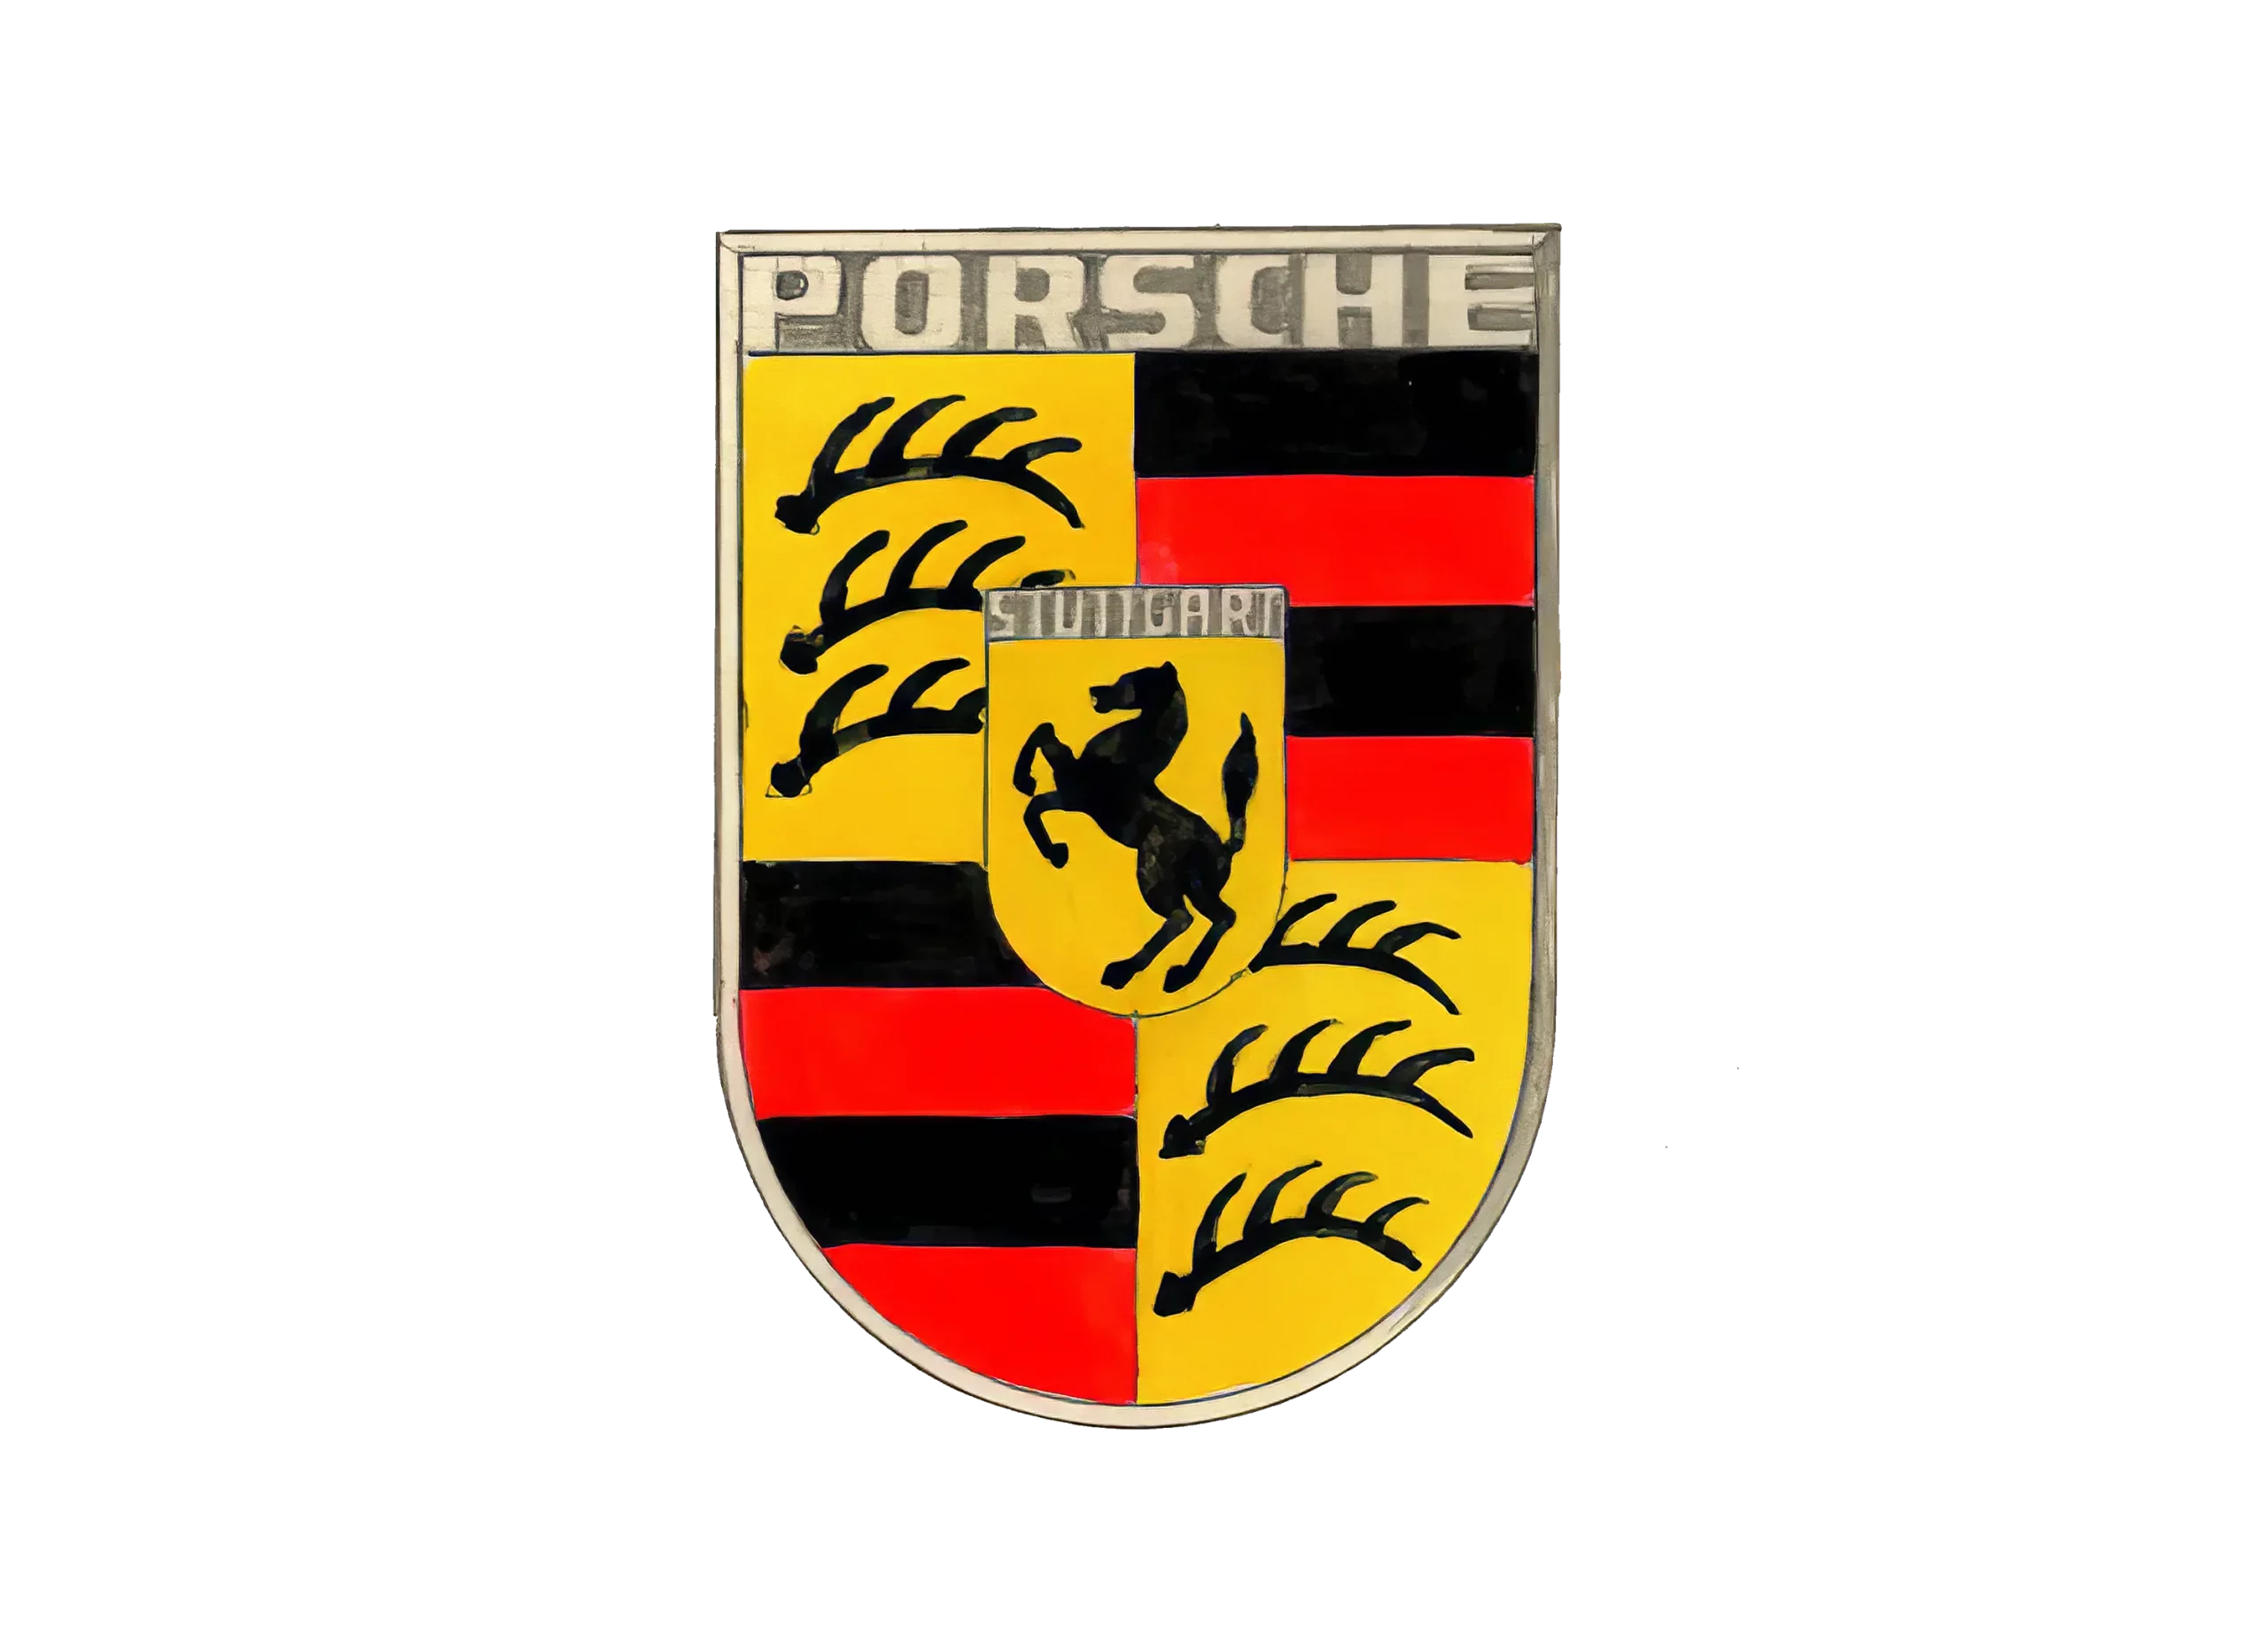 Porsche logo 1952-1963